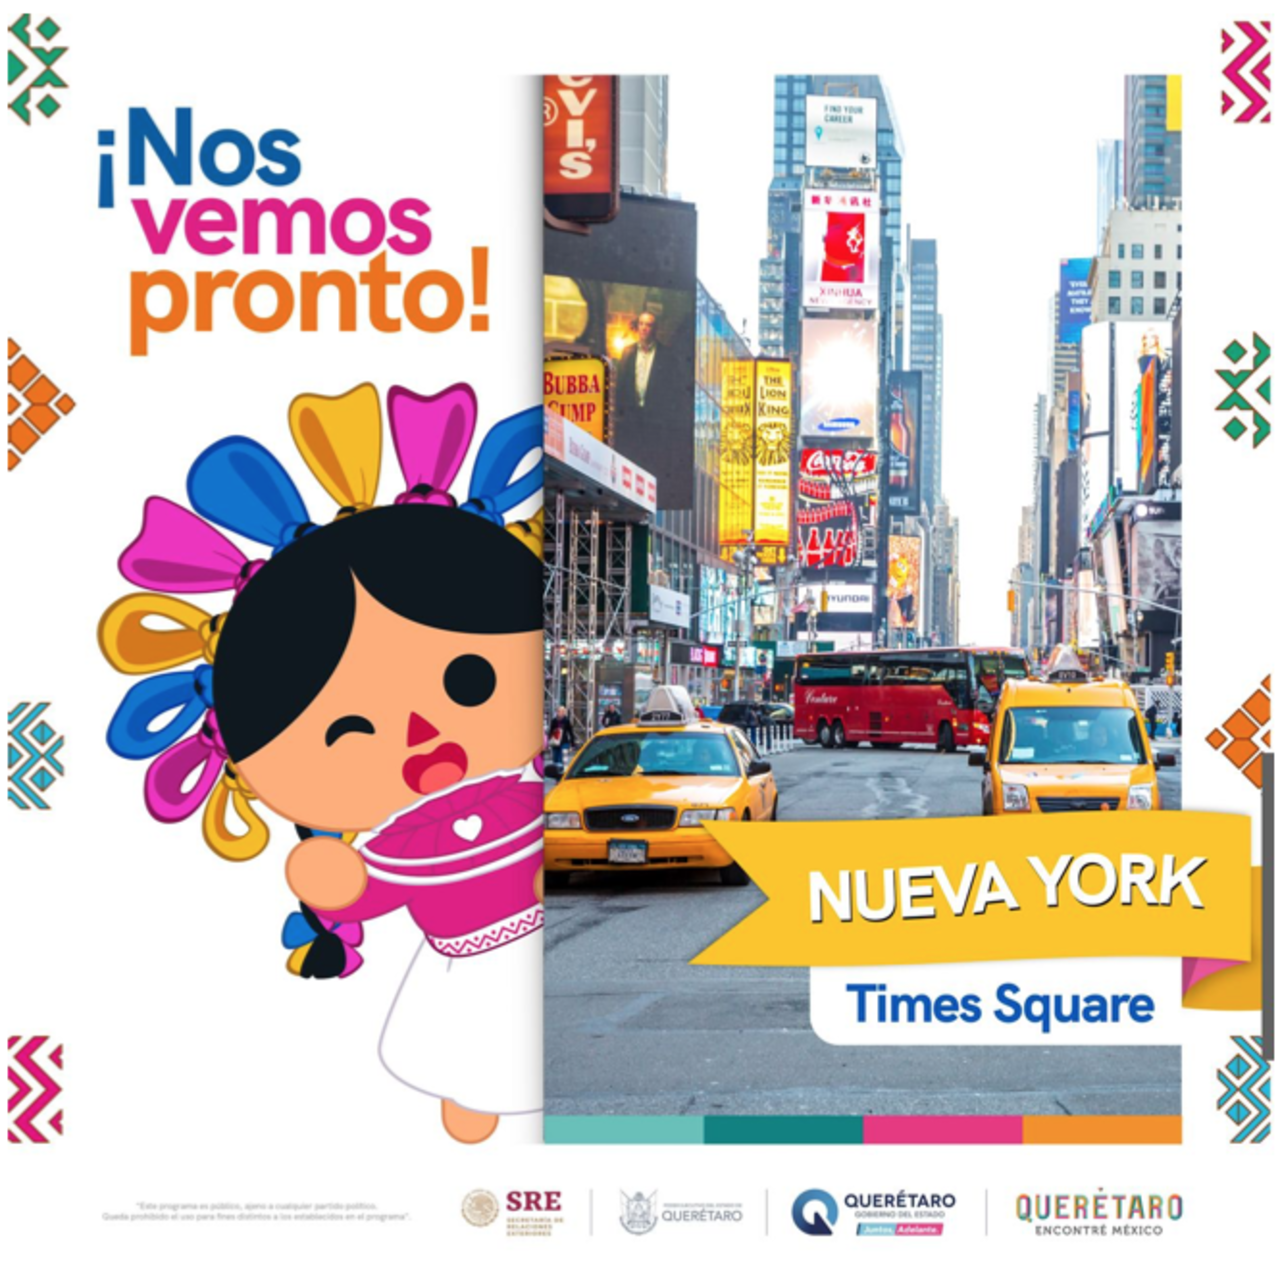 La muñeca Lelé promoverá el turismo y la cultura de Querétaro en Estados Unidos